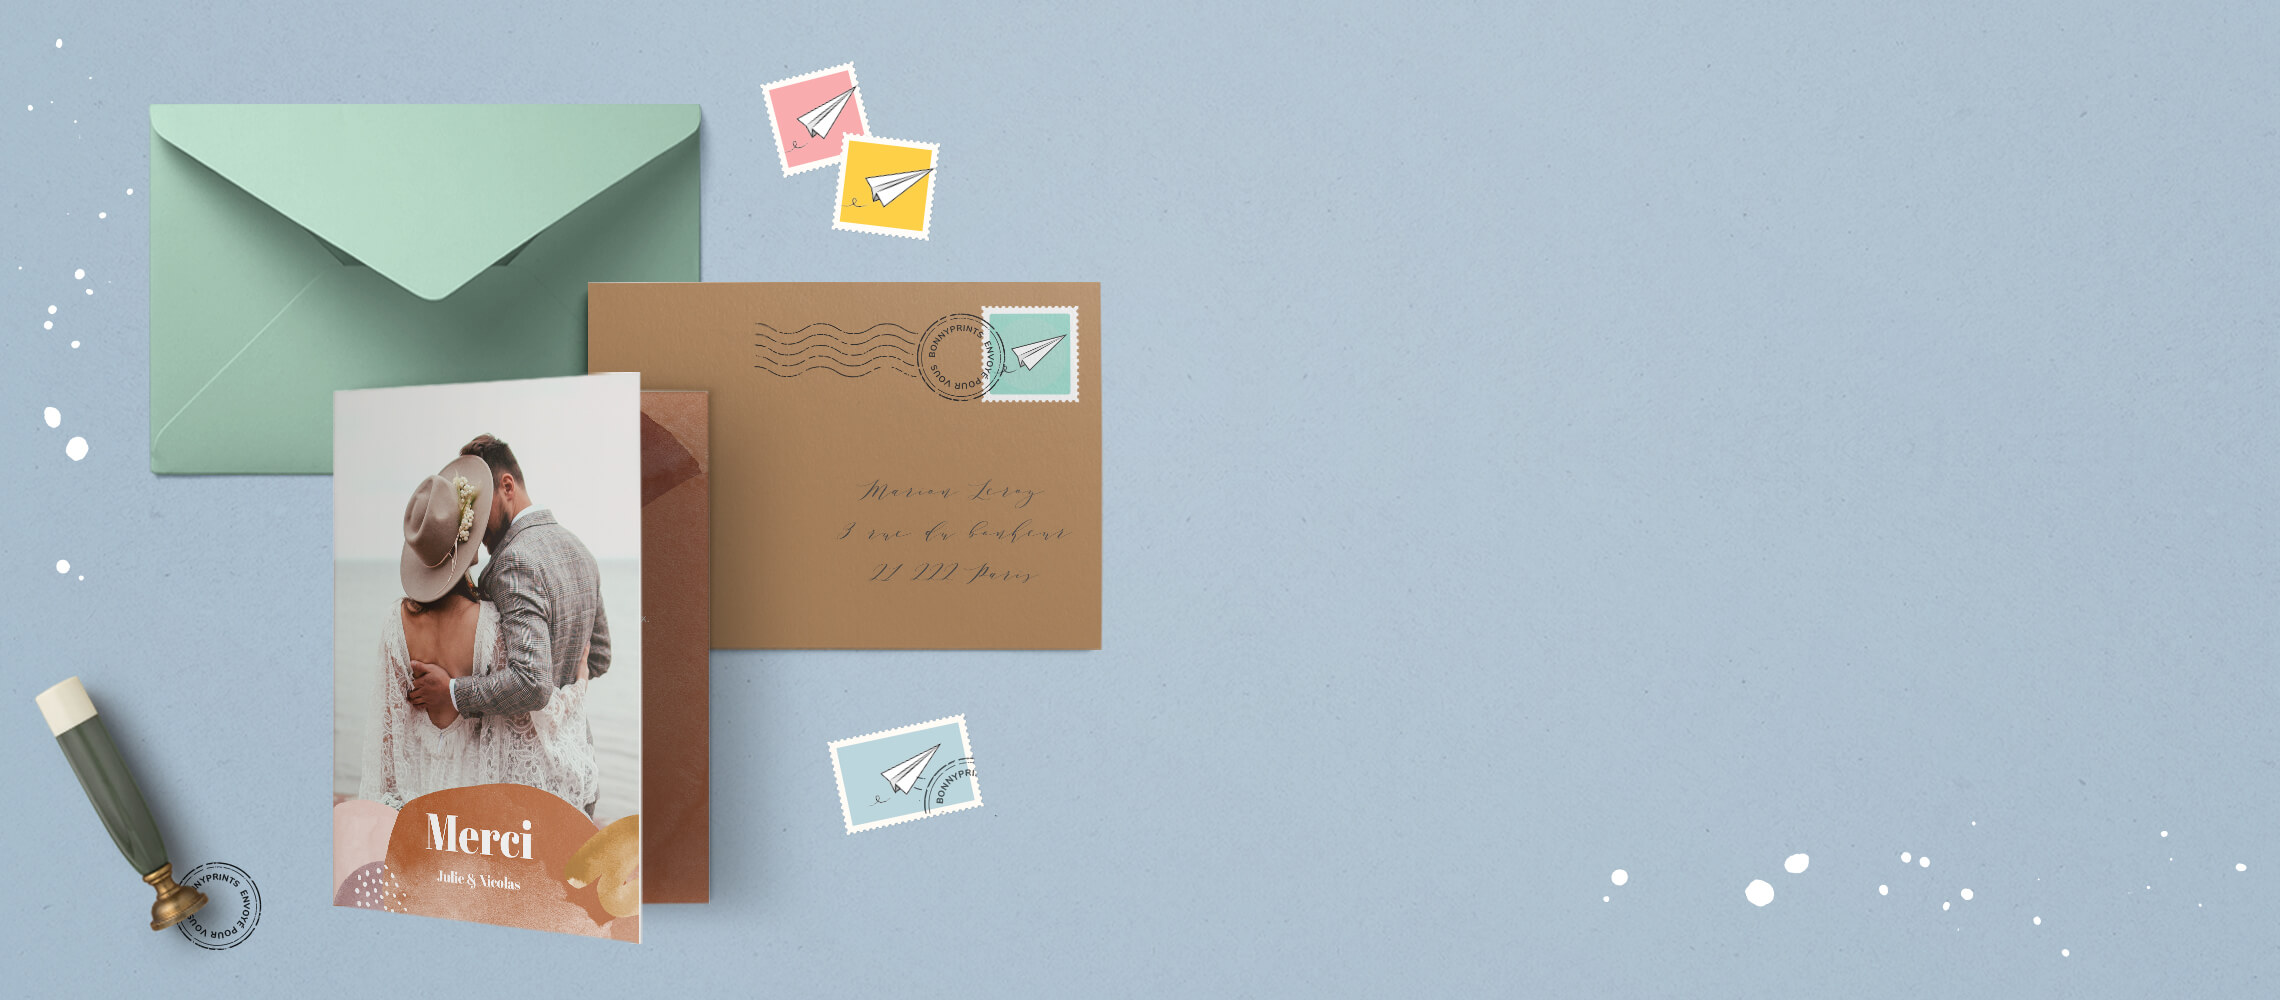 Une carte avec une enveloppe kraft, une enveloppe verte et des timbres sur fonc bleu clair